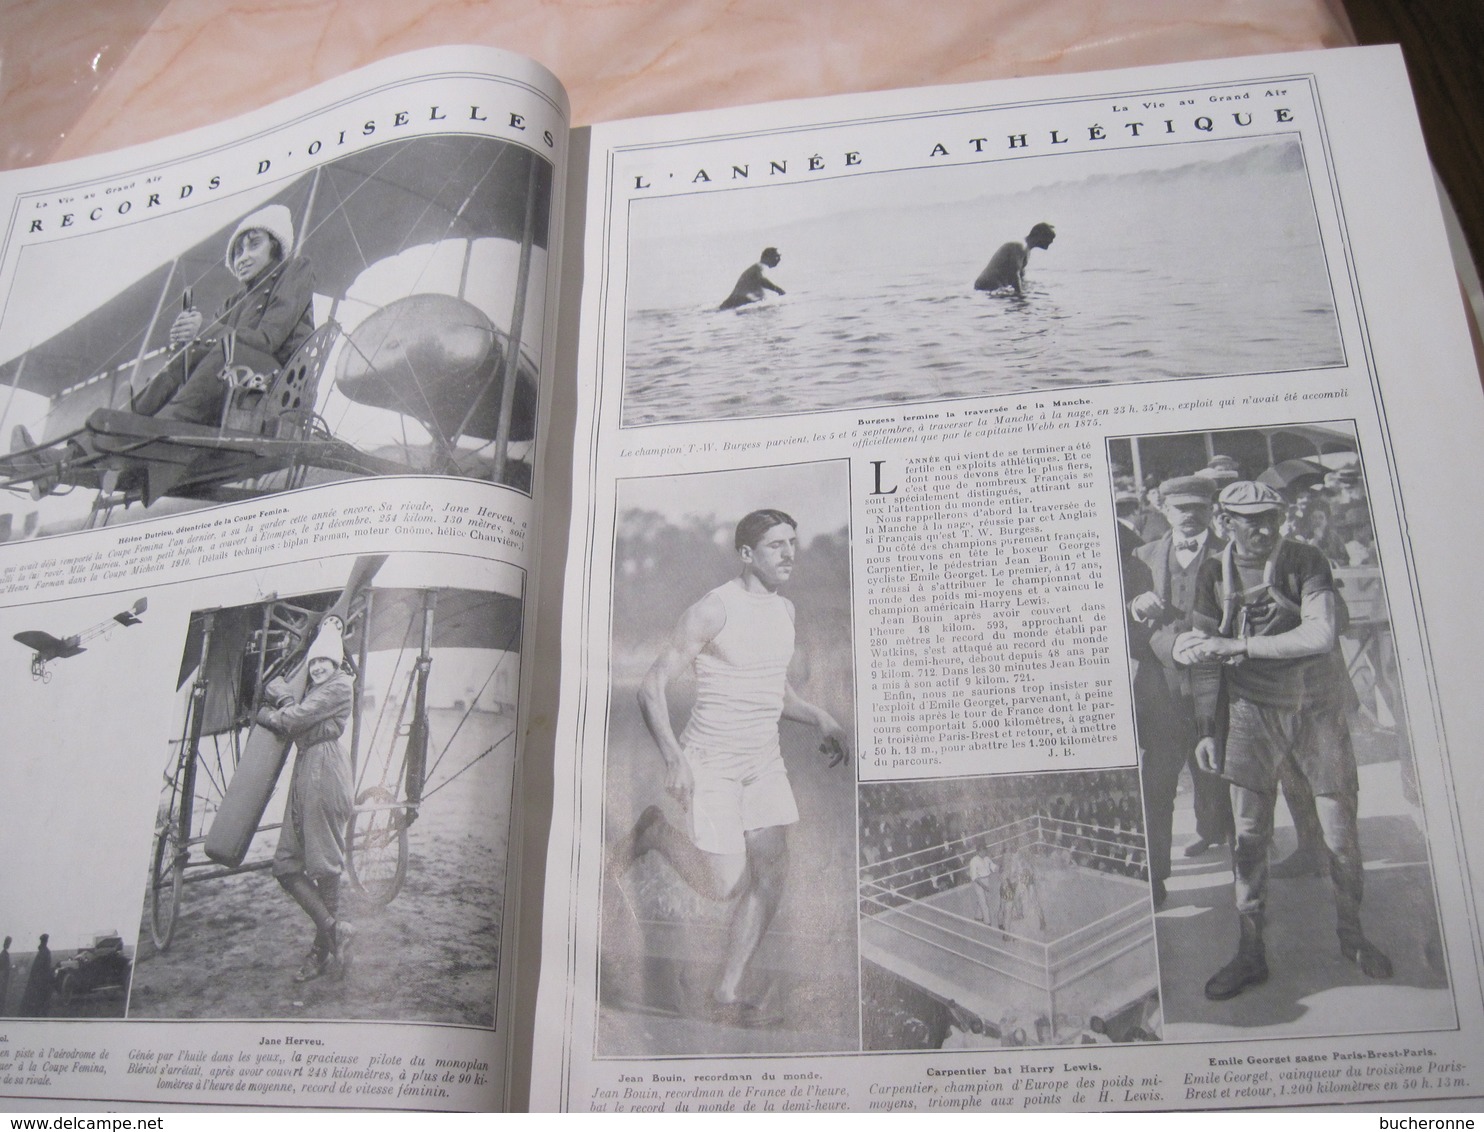 La Vie au grand air 1912 année complète 5 KG 1016 pages 35 x 28 x 6 cm  TBE couverture rayure page pli minime vu son age